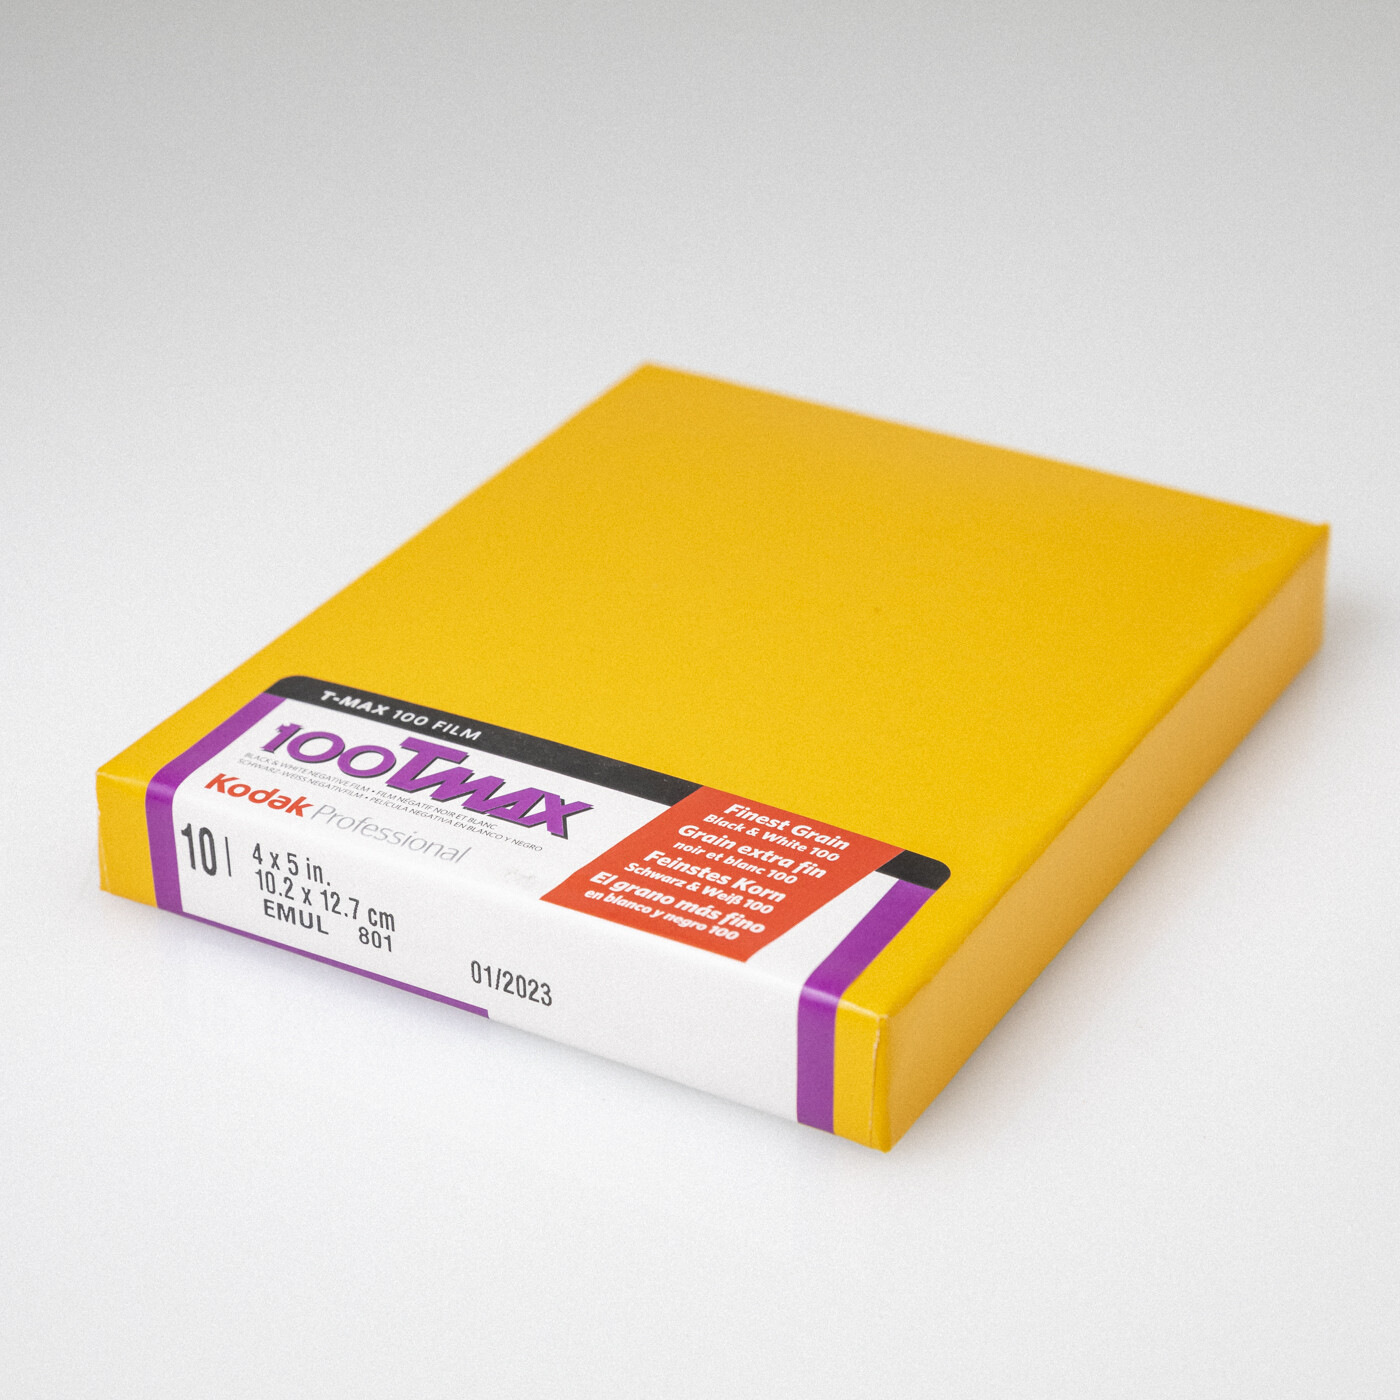 Kodak TMAX 100 4x5 [10 sheets]